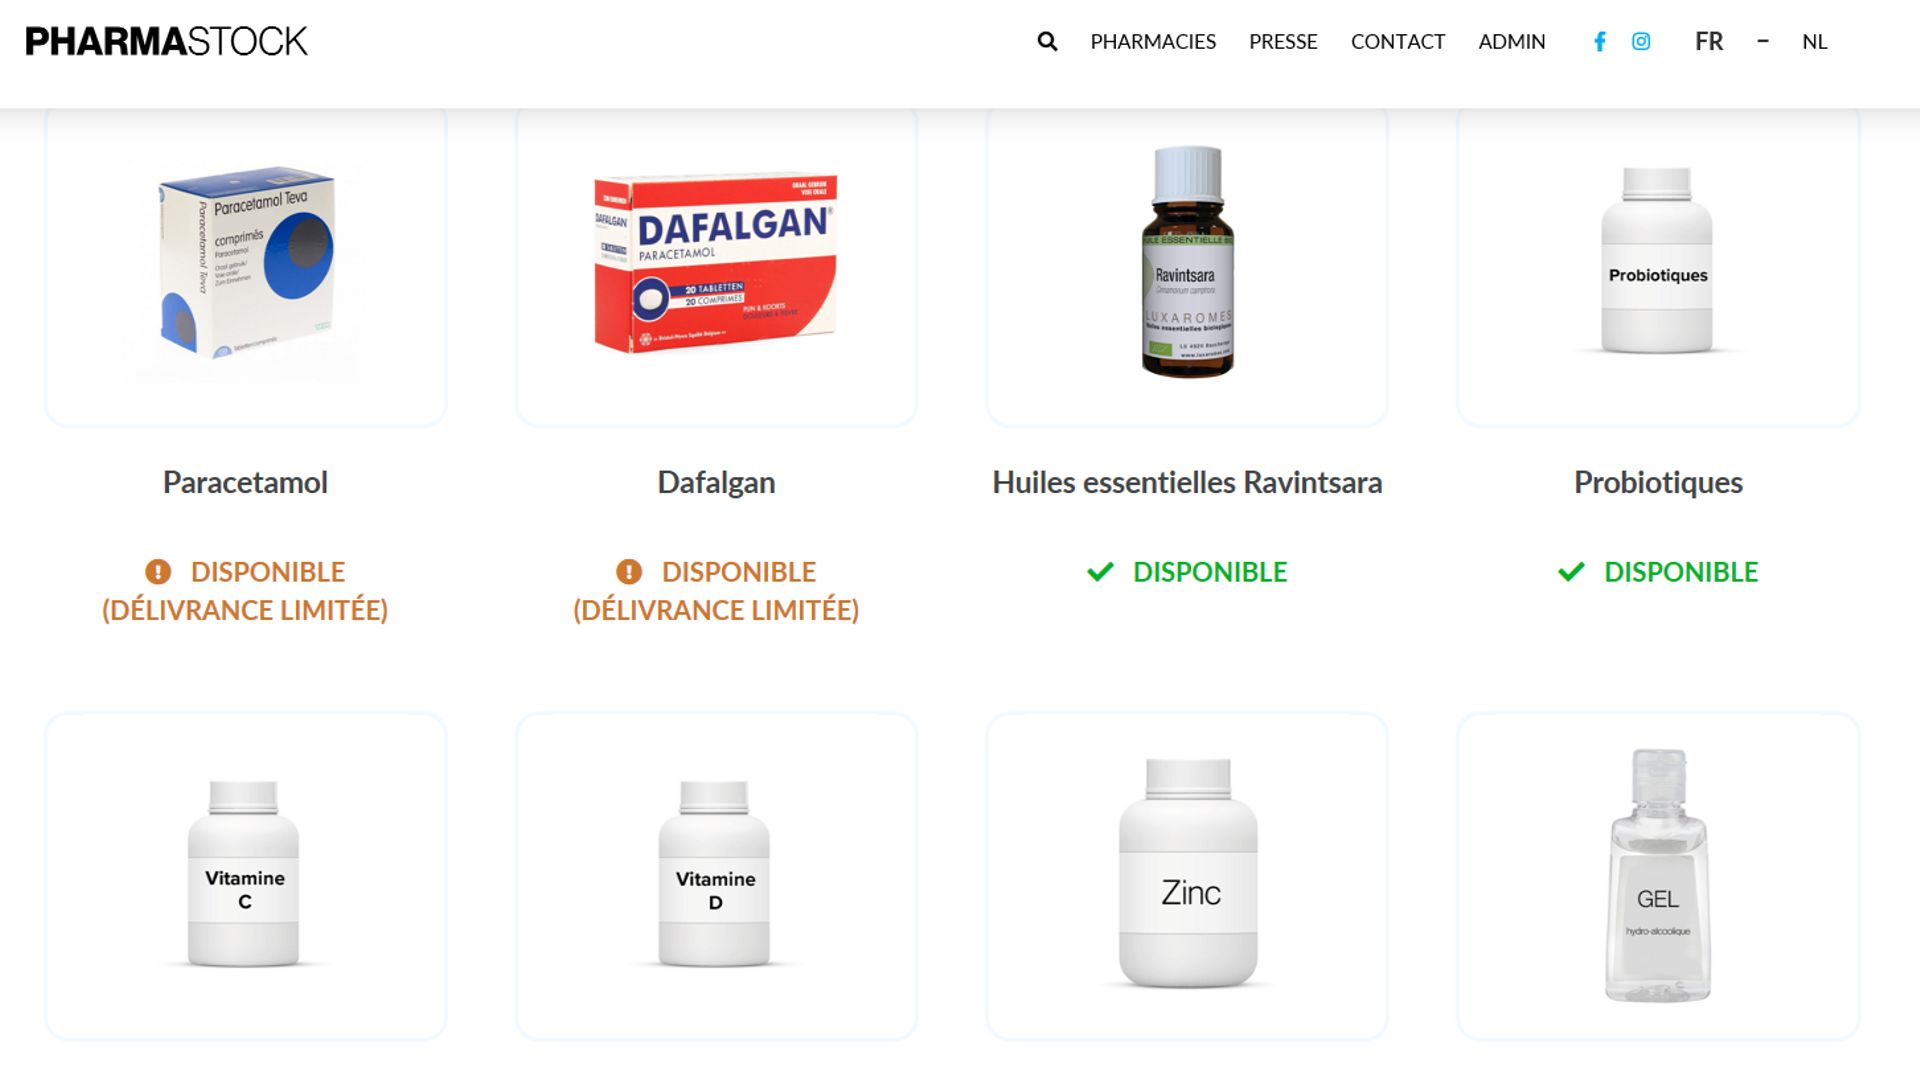 Le portail est actuellement gratuit pour les pharmacies et les utilisateurs 